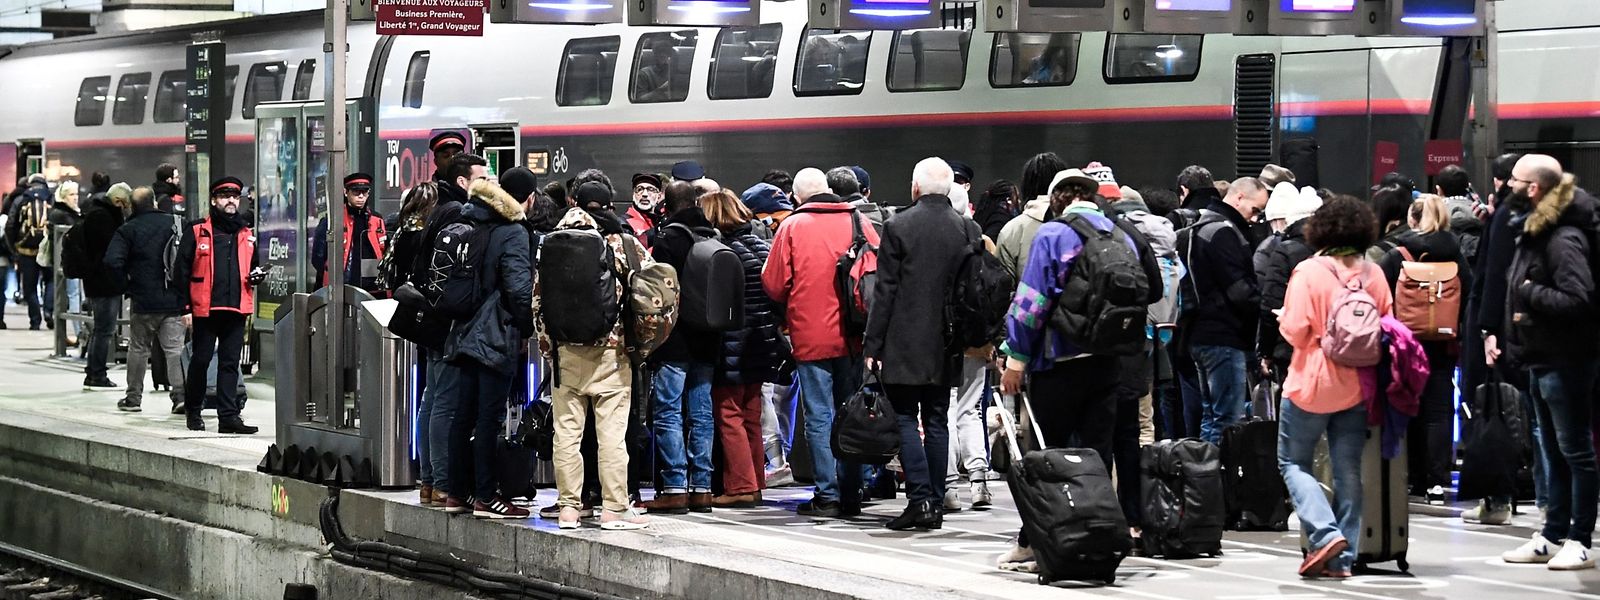 Des voyageurs en attente d'un train à la gare Montparnasse de Paris, le 2 décembre.